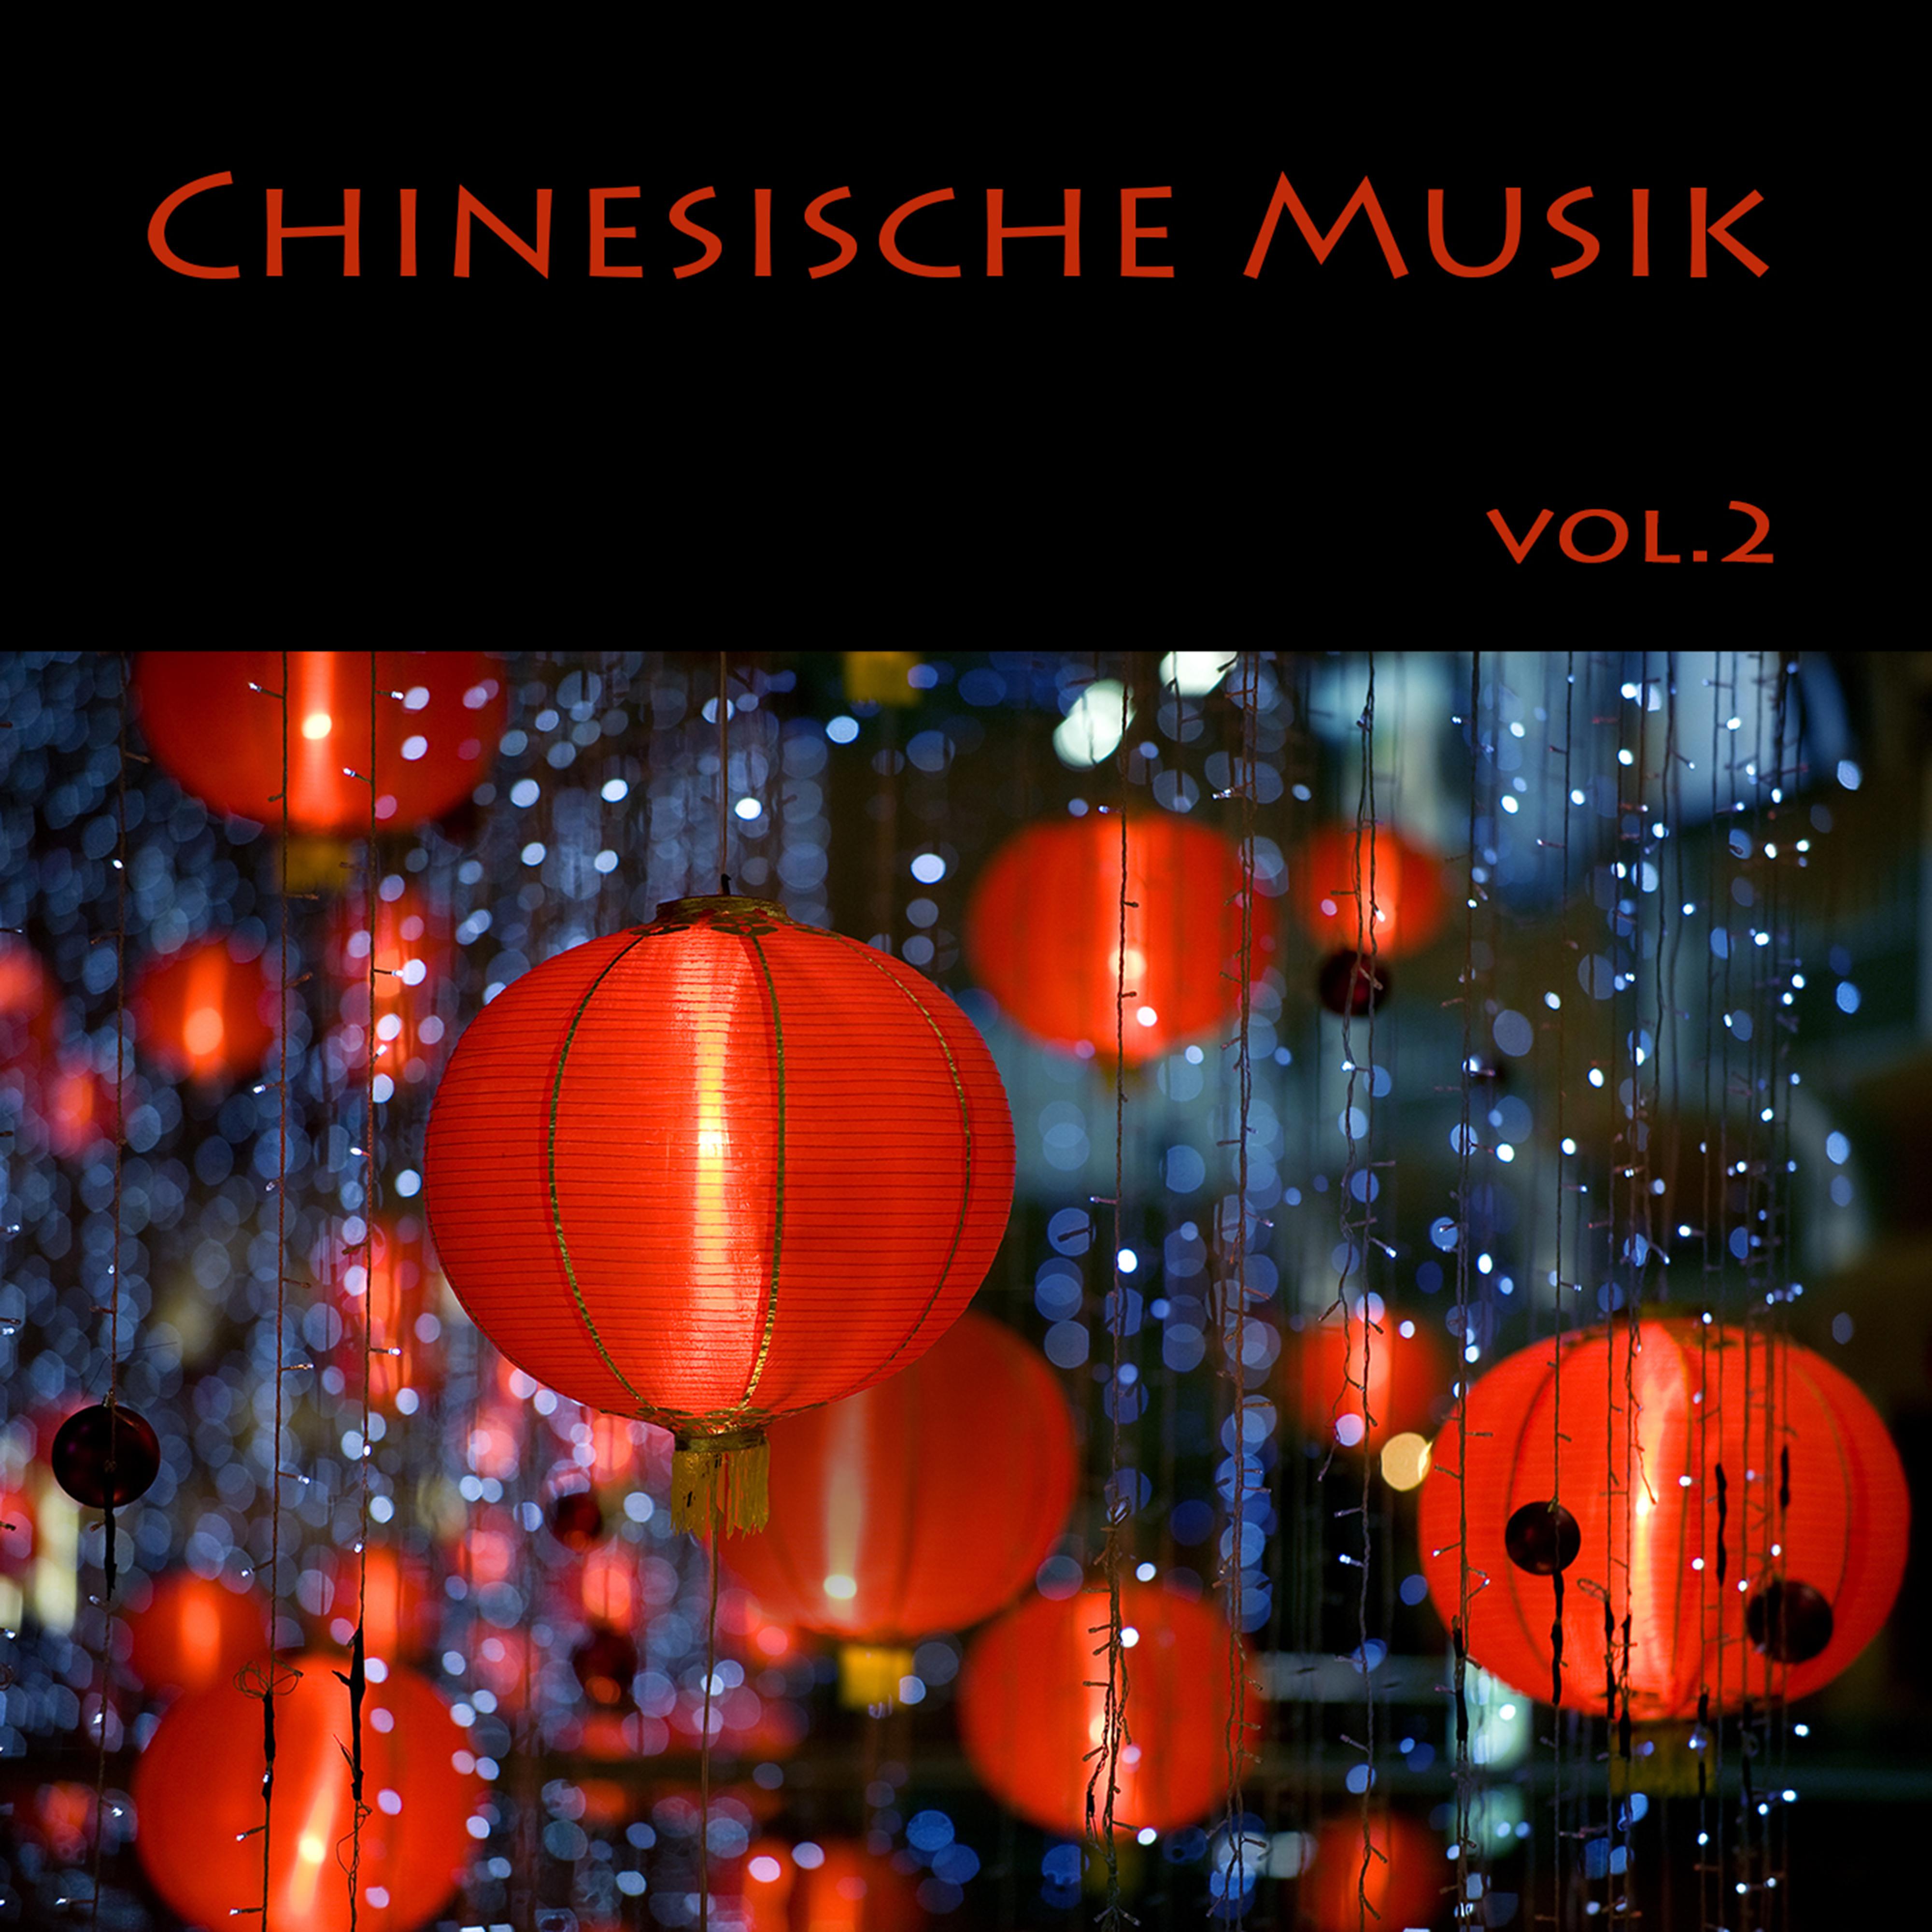 Chinesische Musik (Instrumental Music)